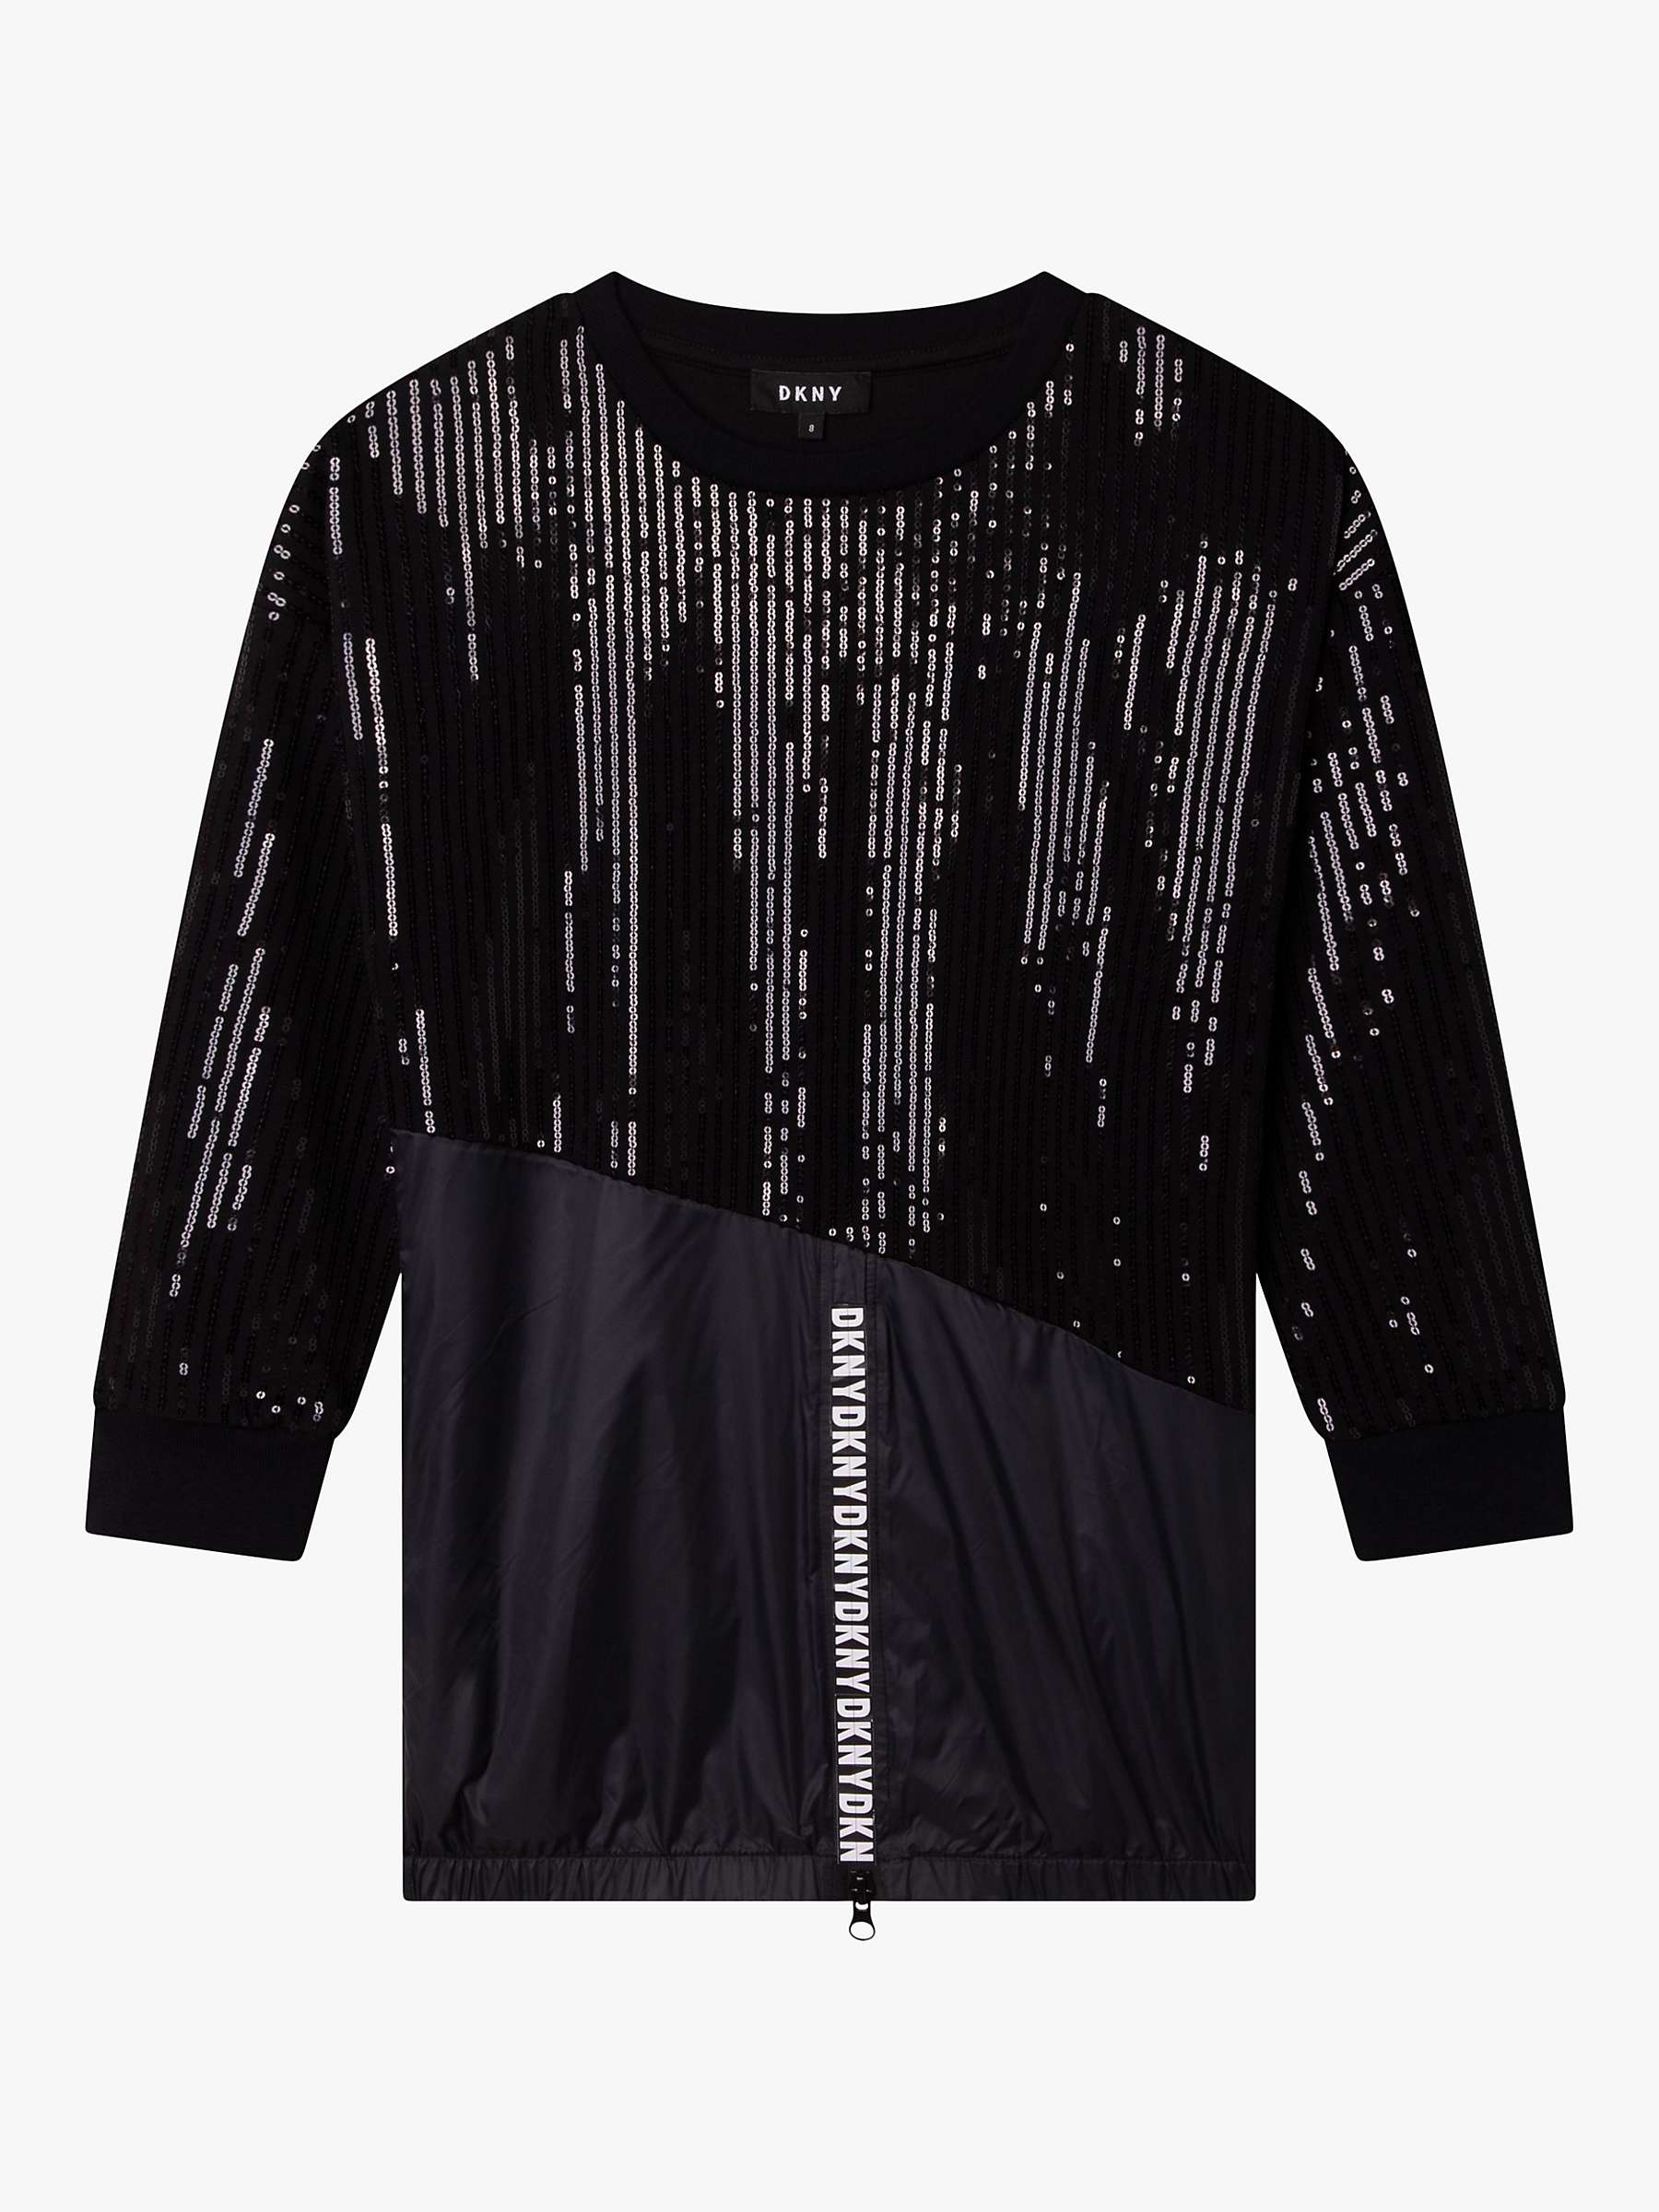 Buy DKNY Kids' Fancy Sequin Dress, Black Online at johnlewis.com